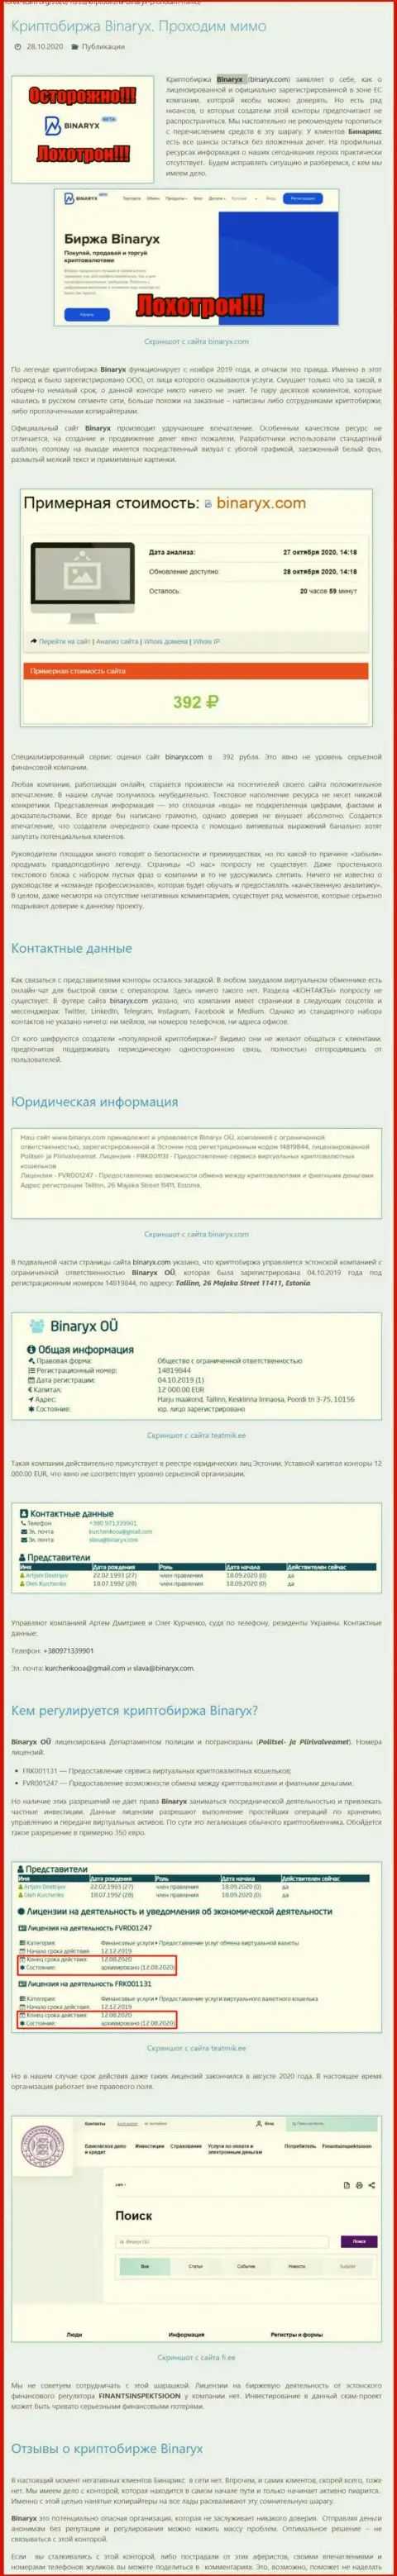 Binaryx OÜ - это ШУЛЕРА !!! Грабеж депозитов гарантируют (обзор организации)